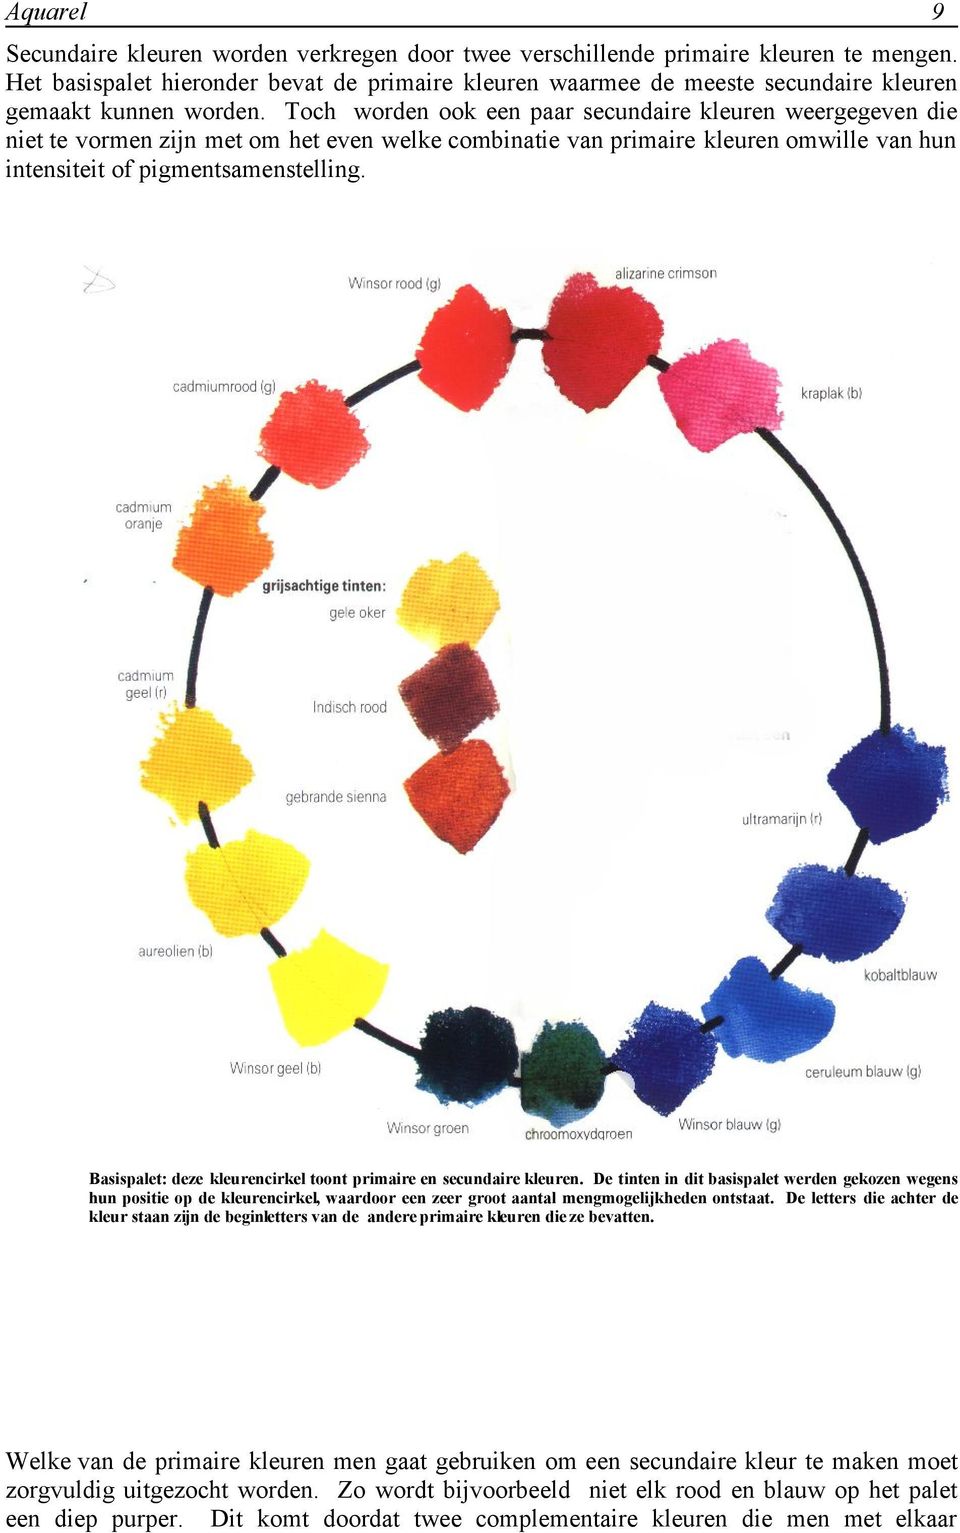 Basispalet: deze kleurencirkel toont primaire en secundaire kleuren.